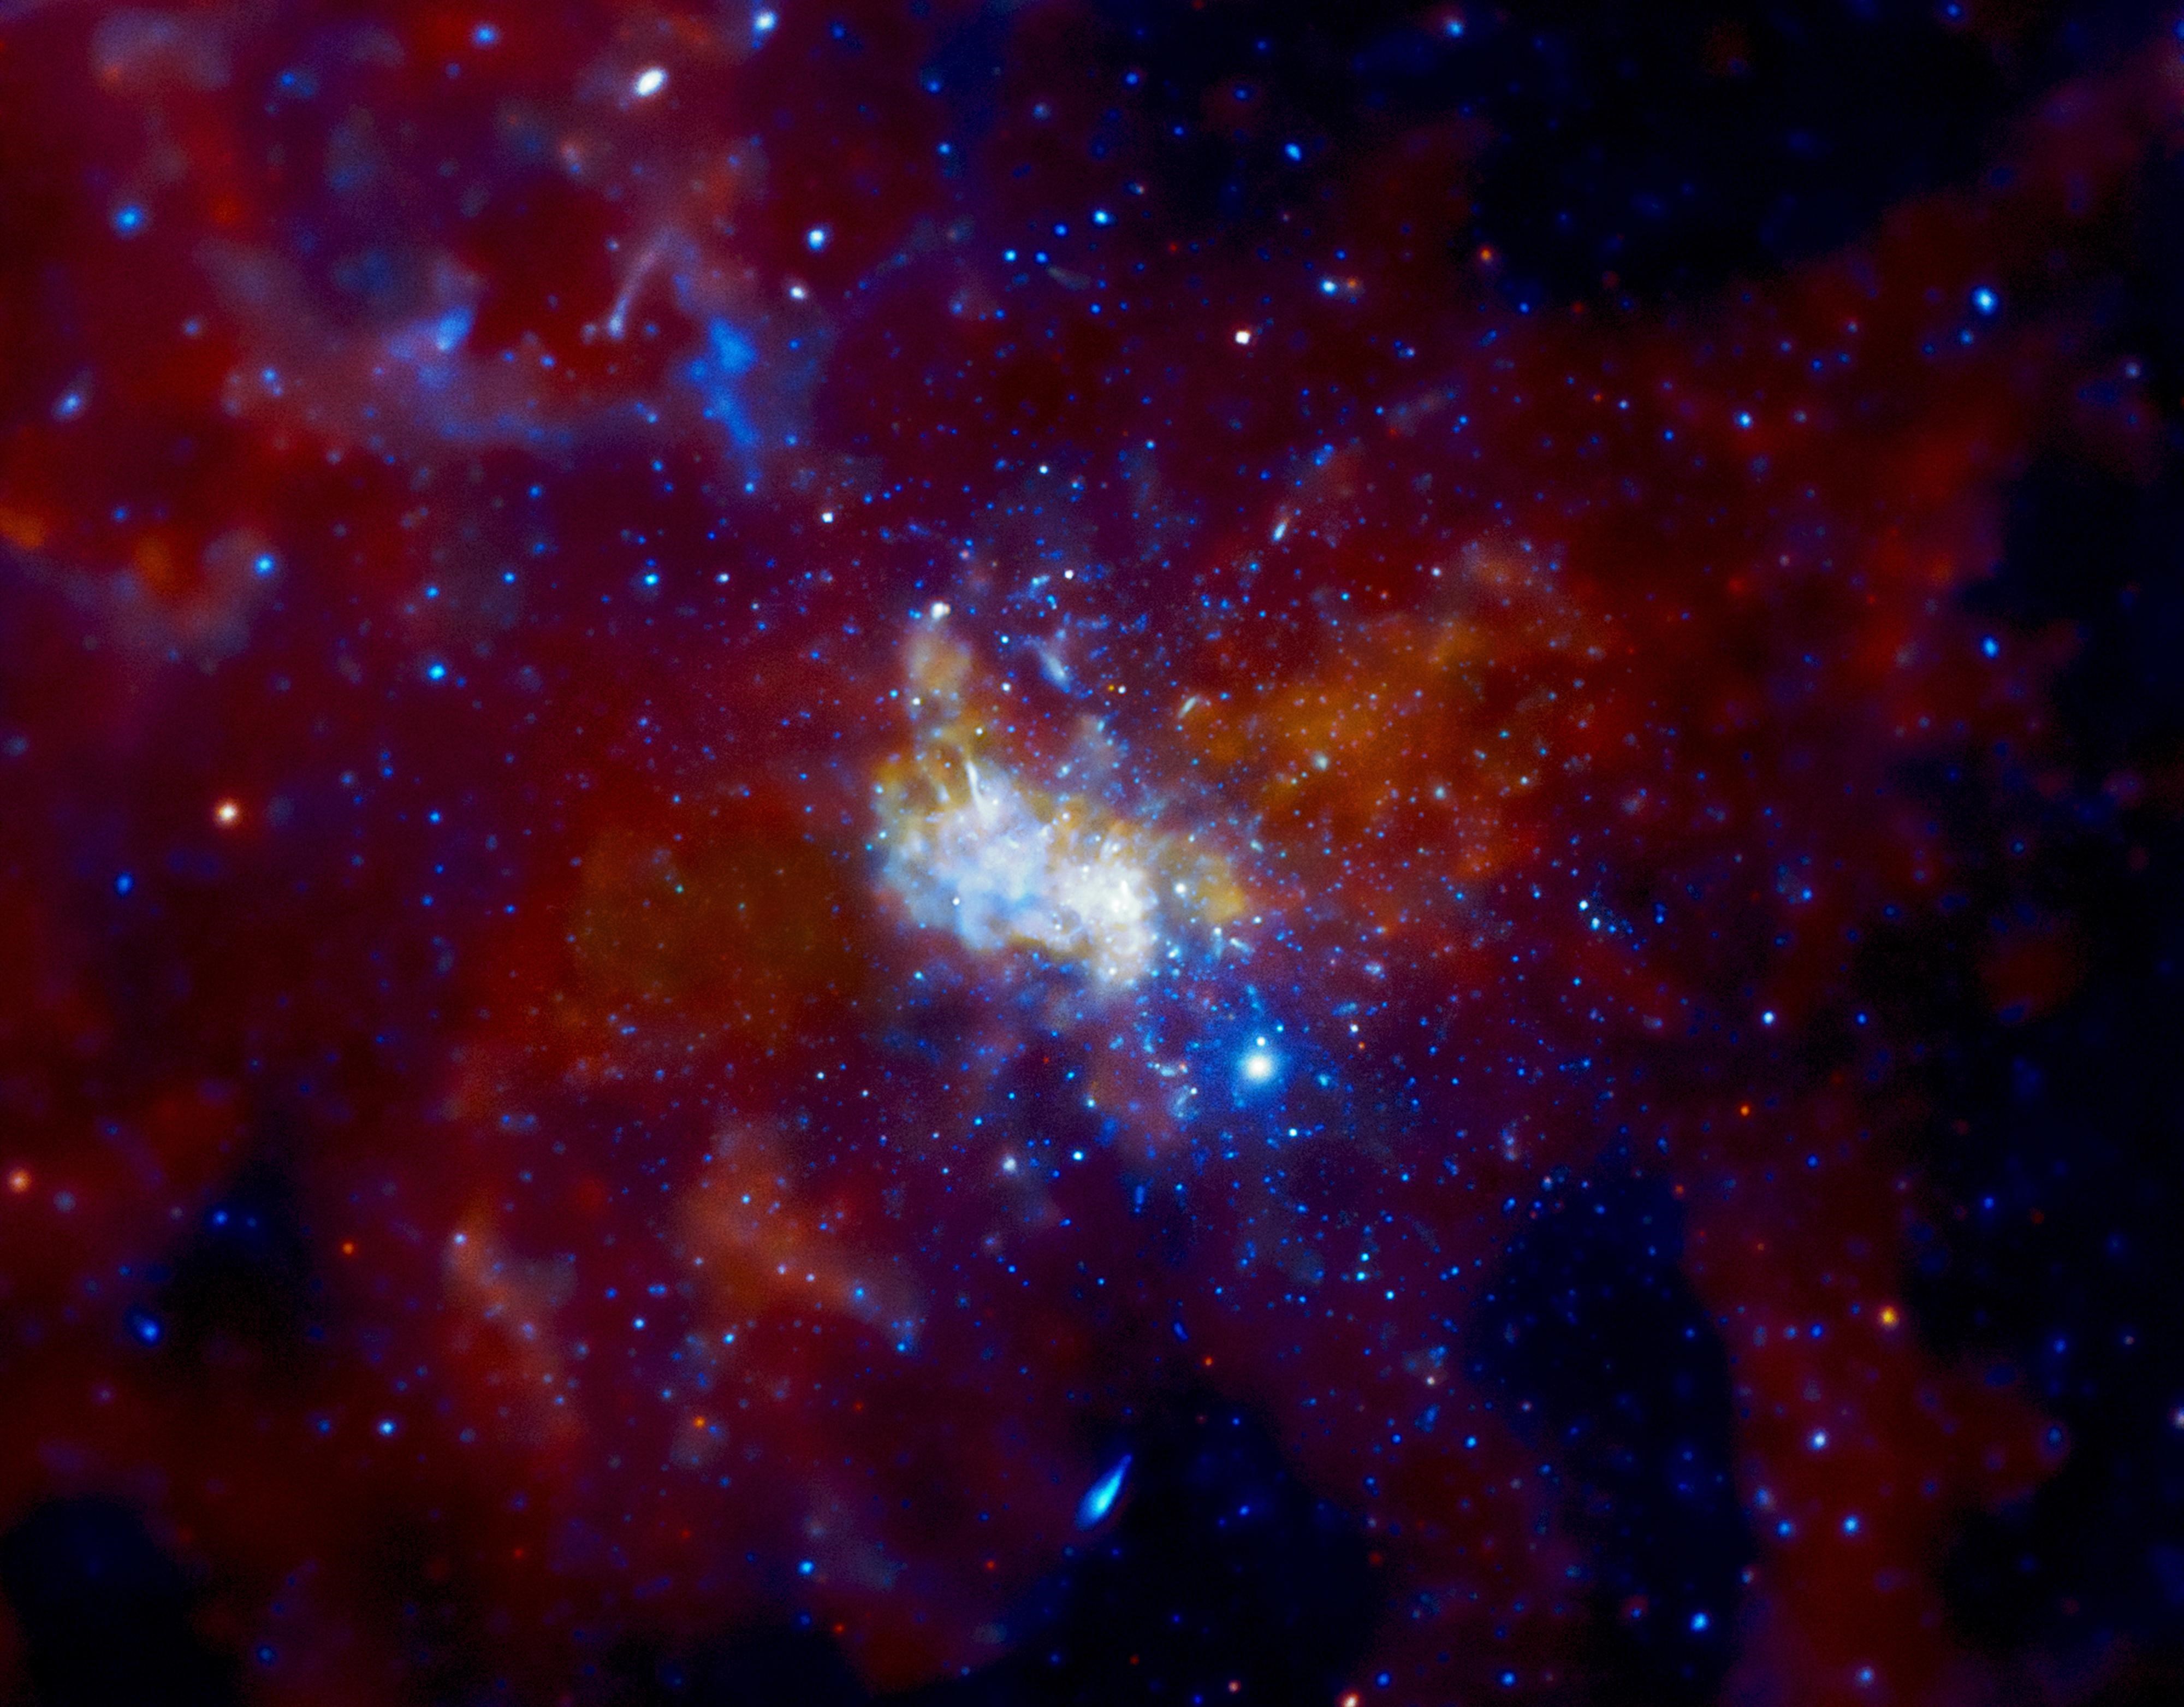 Galaksinin Merkezinde Kara Delikten Daha Gizemli Nesne Olabilir